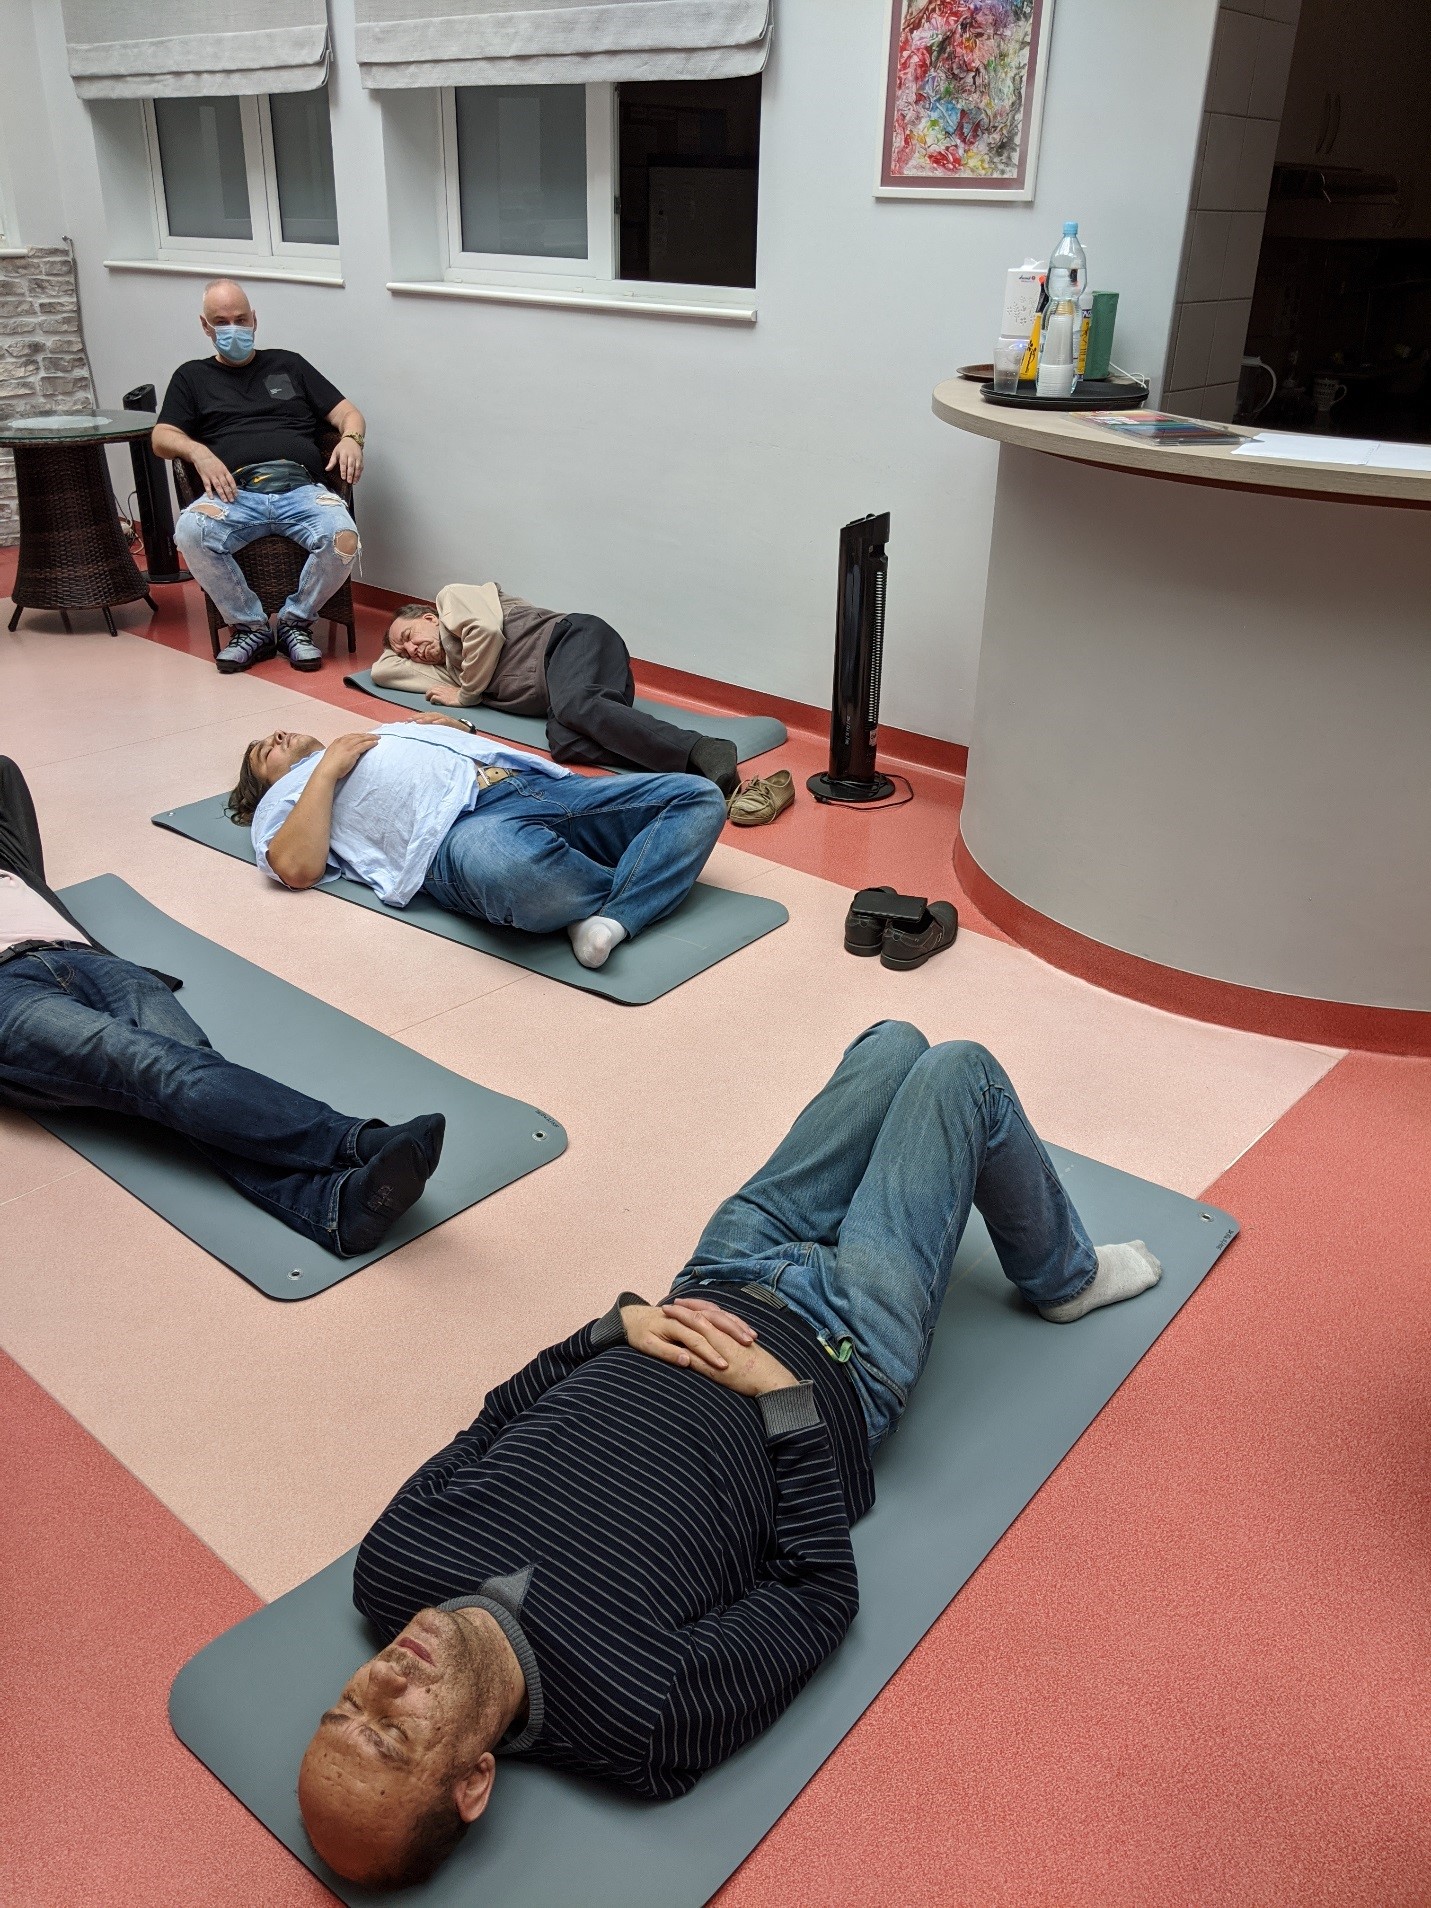 Uczestnicy terapii leżący na matach do ćwiczeń podczas zajęć relaksacyjnych, w tle mężczyzna na fotelu.